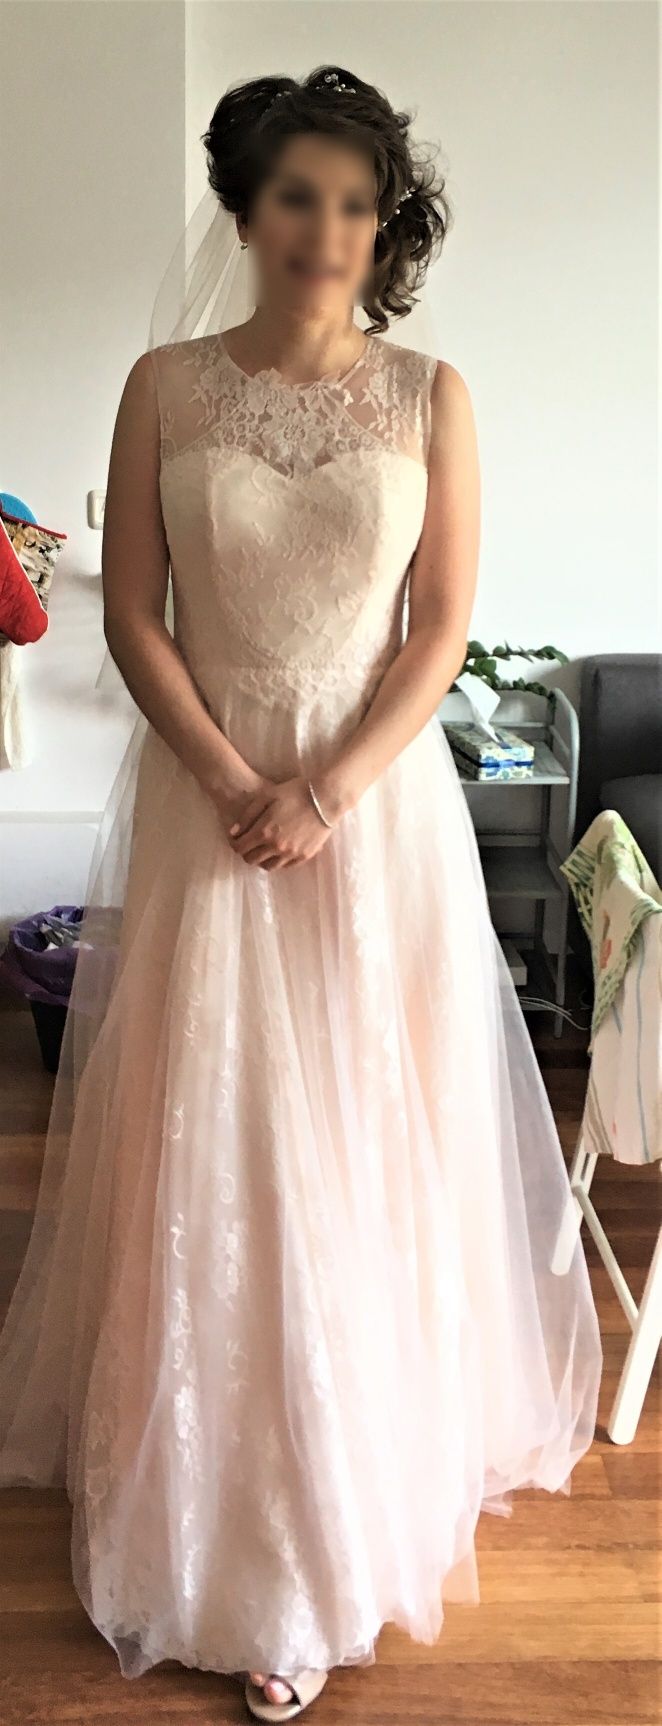 Платье свадебное нежного цвета